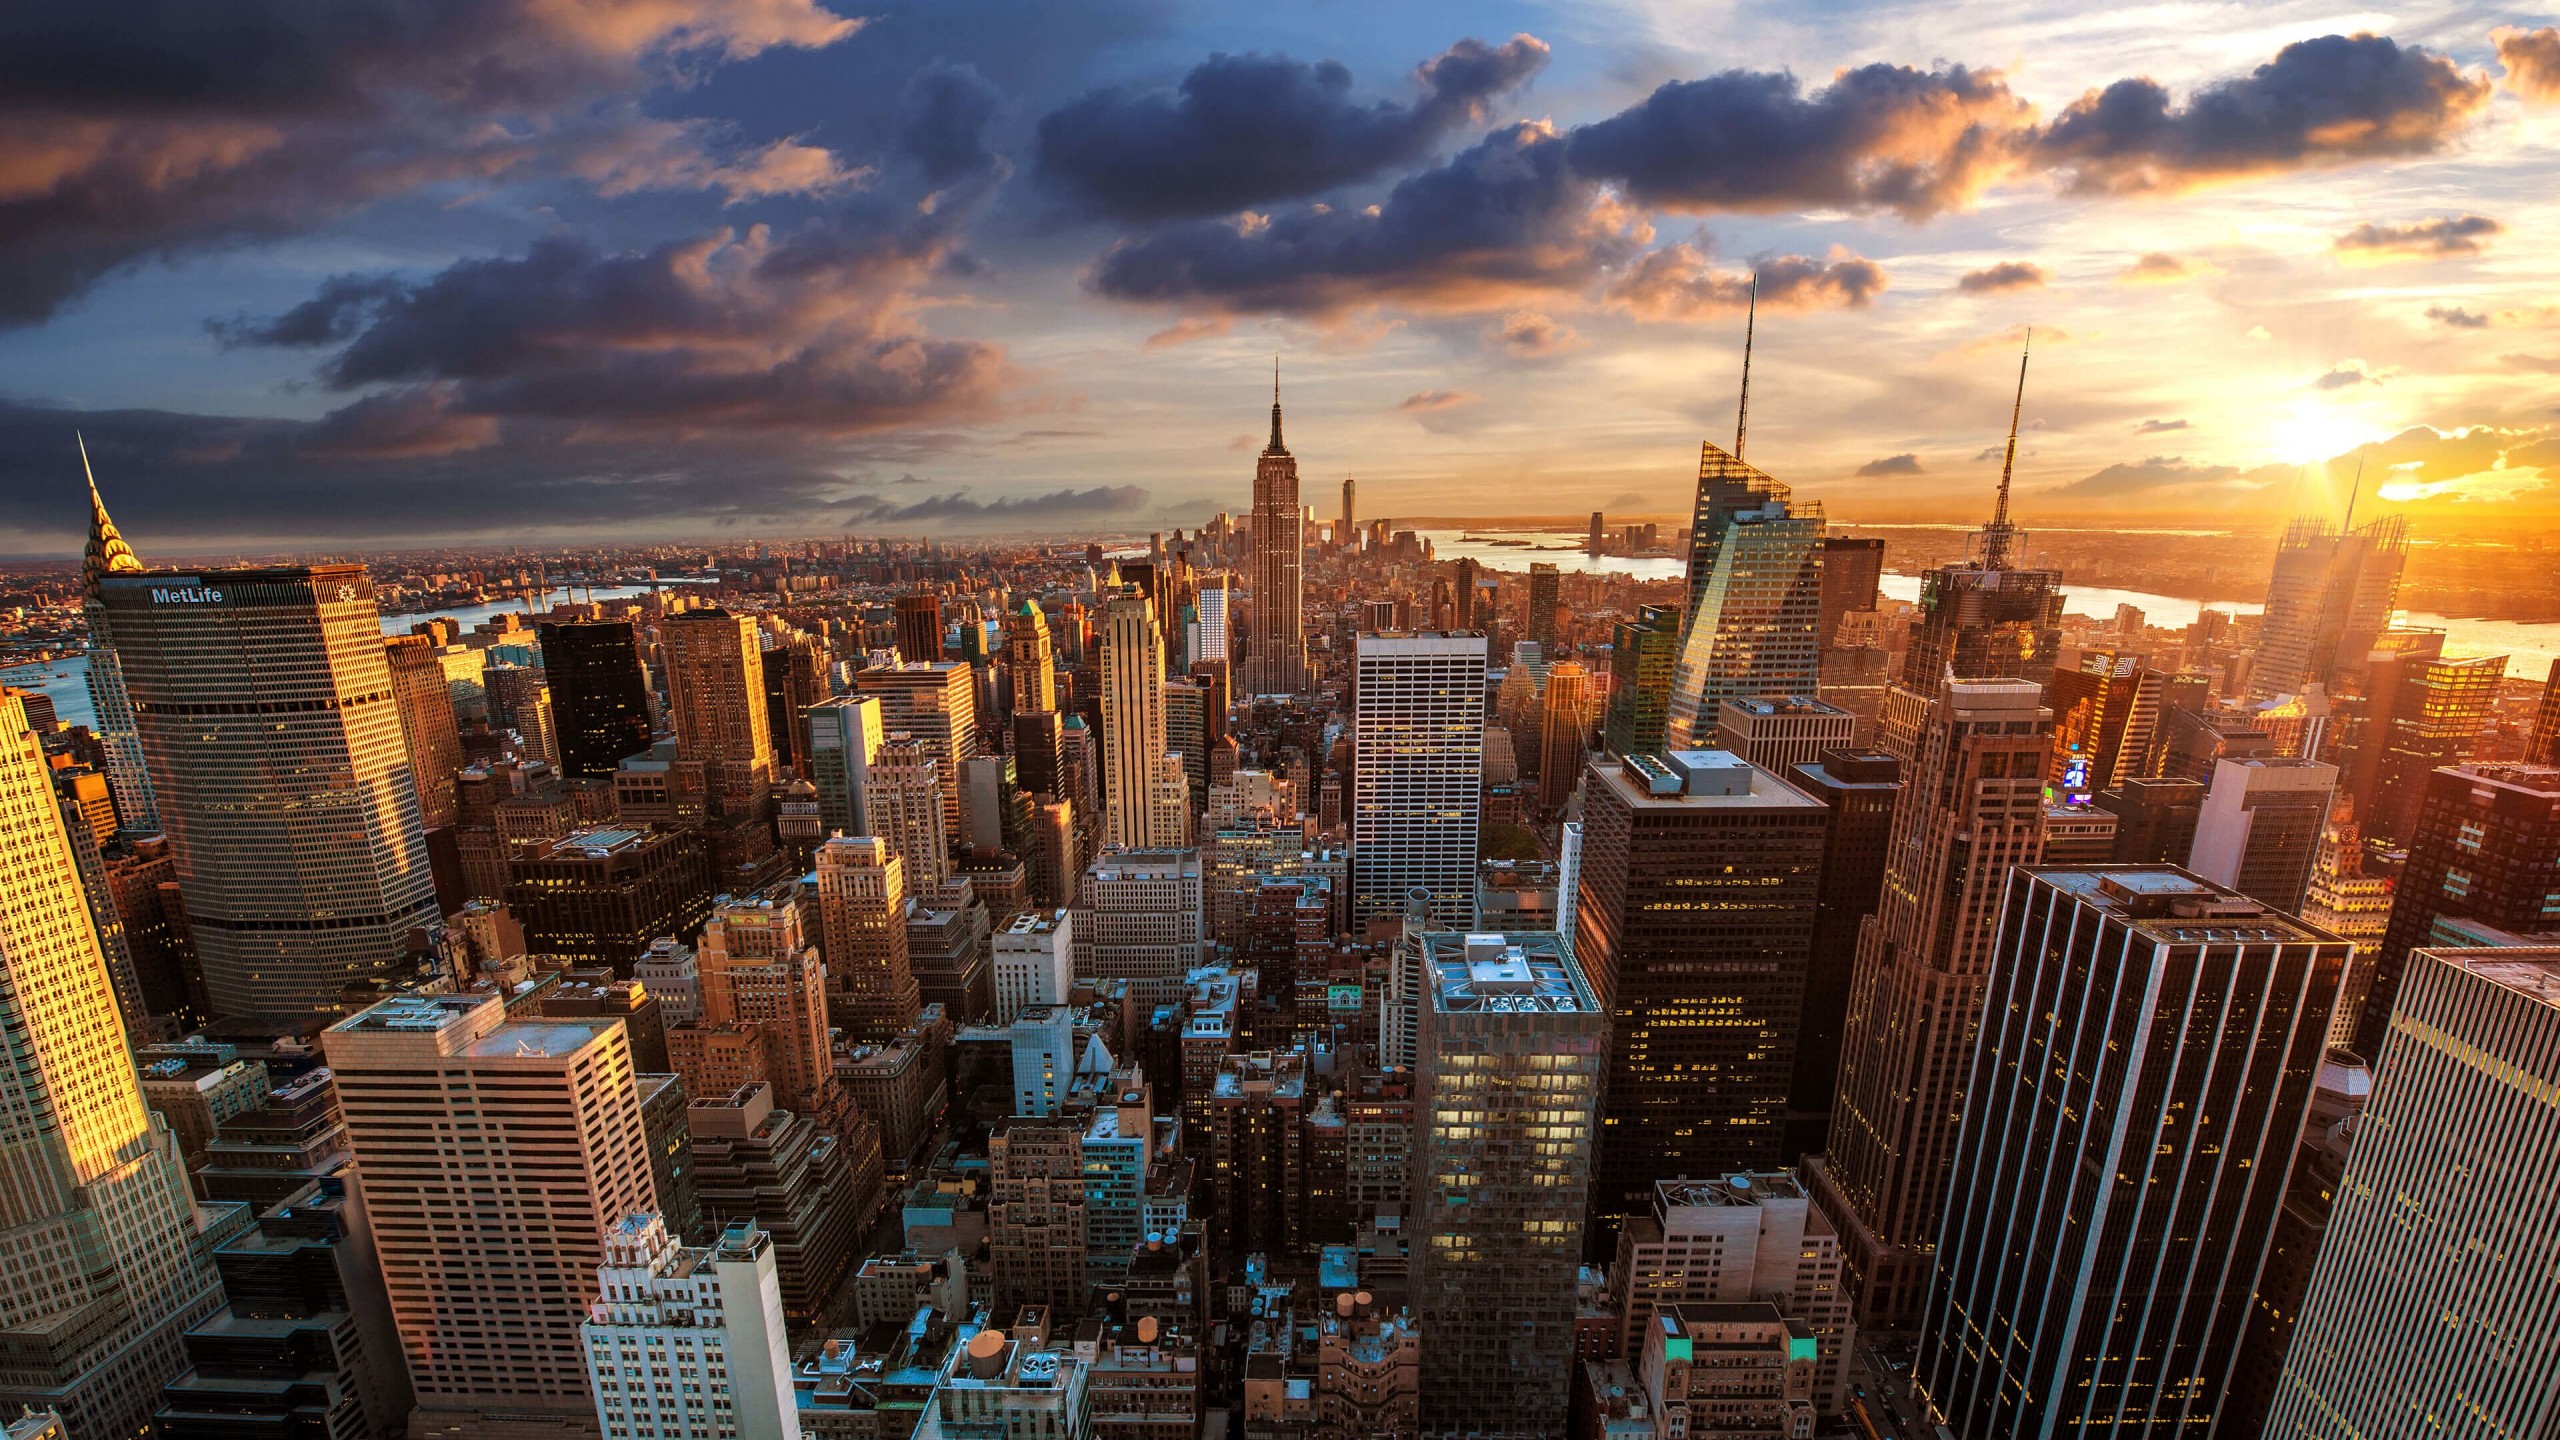 New York City Skyline At Sunset Wallpaper for Social Media YouTube Channel Art